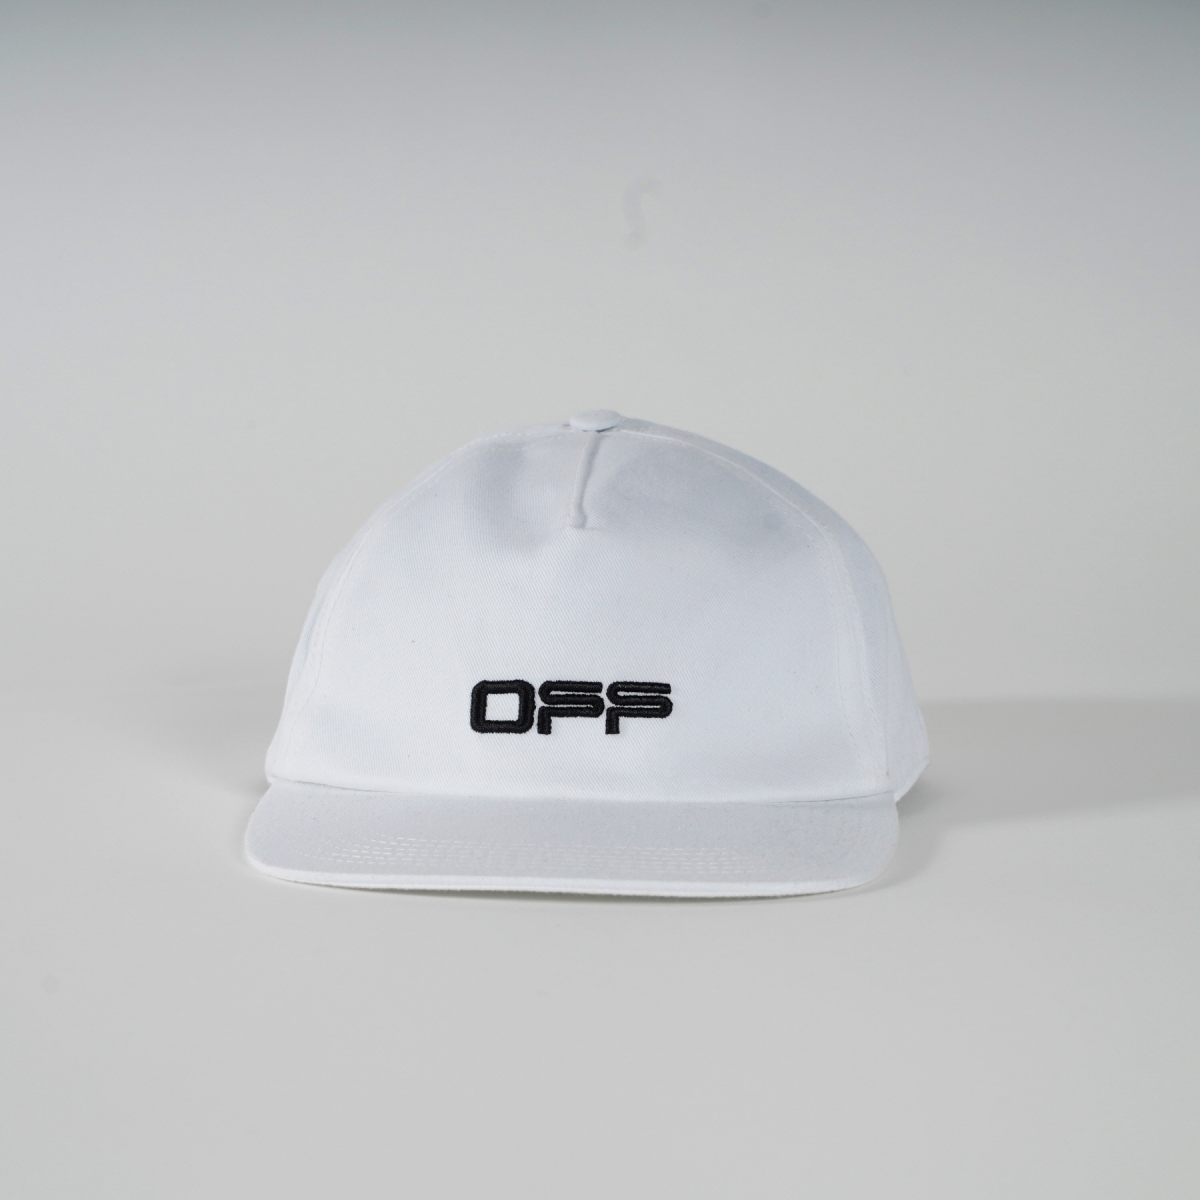 Off-White Cap